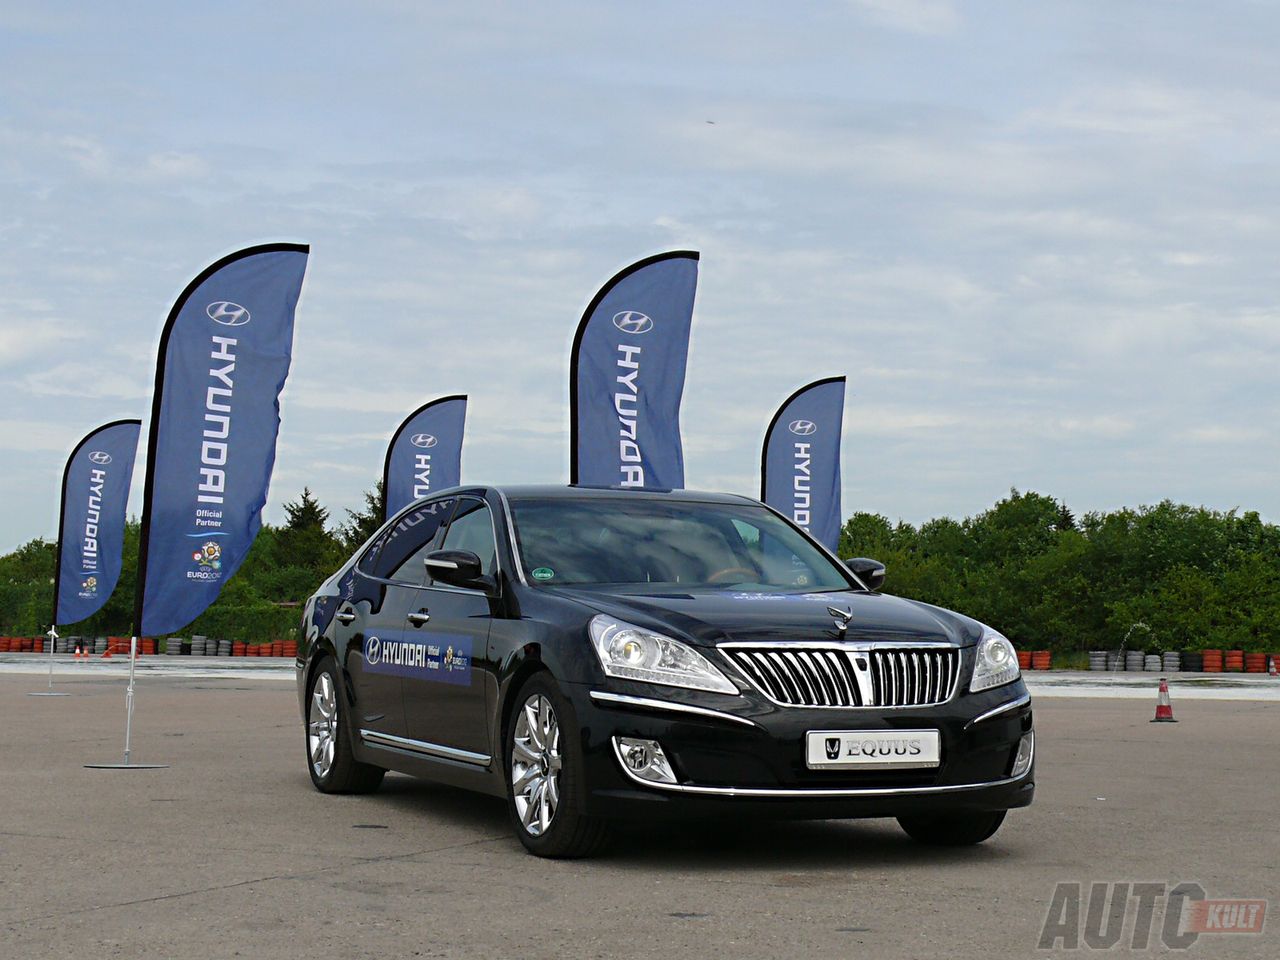 Hyundai oficjalnie przekazuje flotę aut na Euro 2012 [relacja autokult.pl]